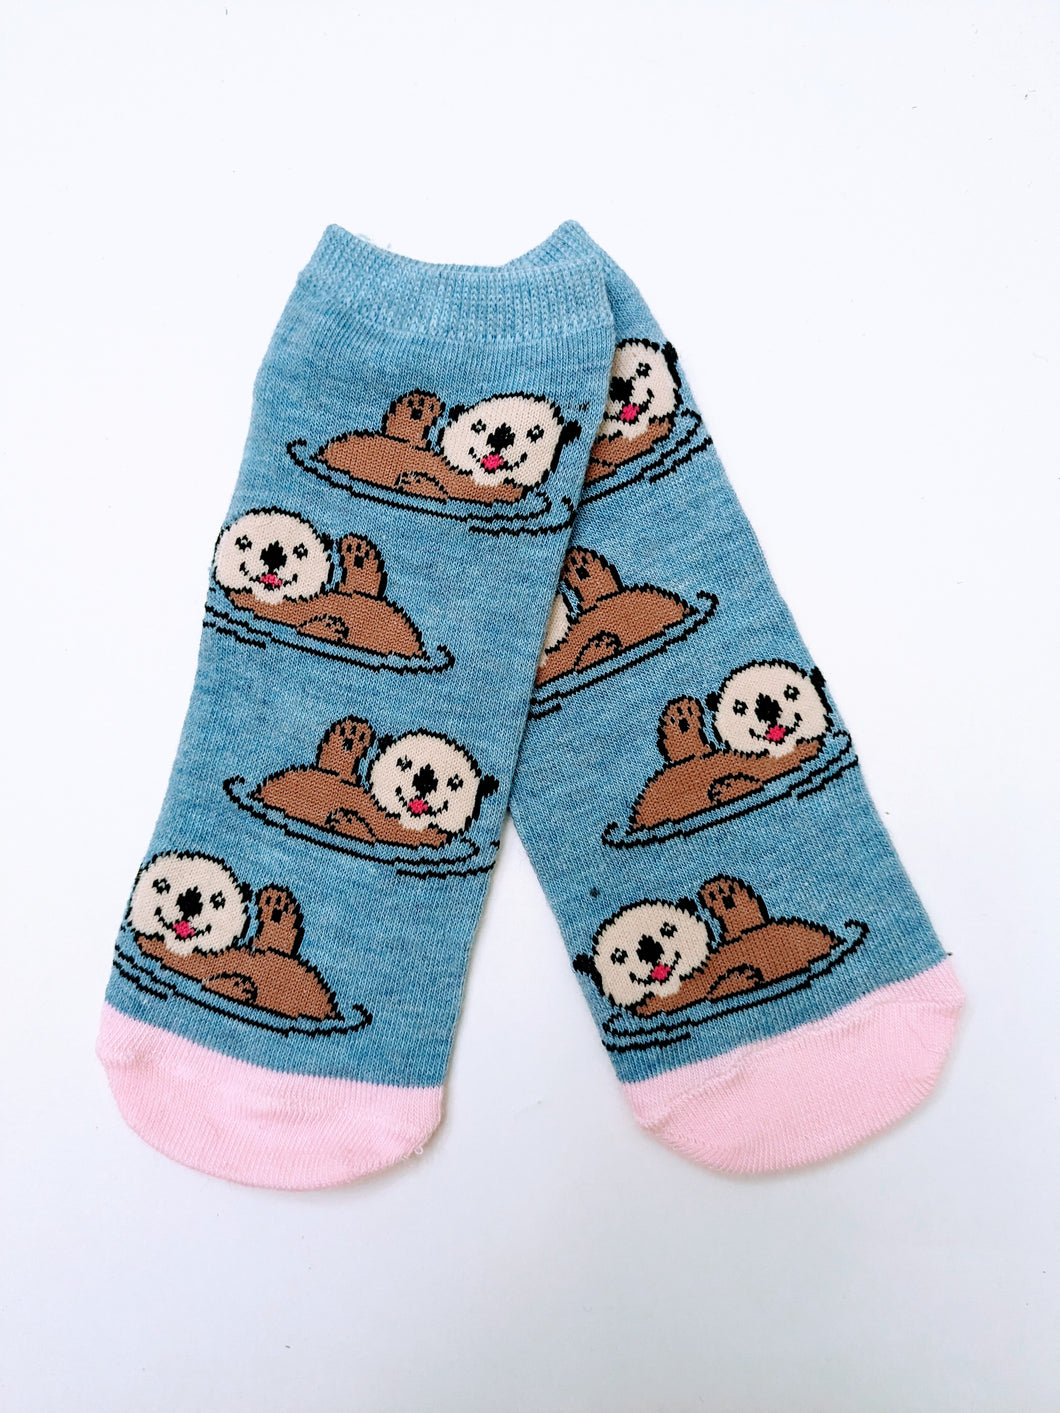 Otter Ankle Socks